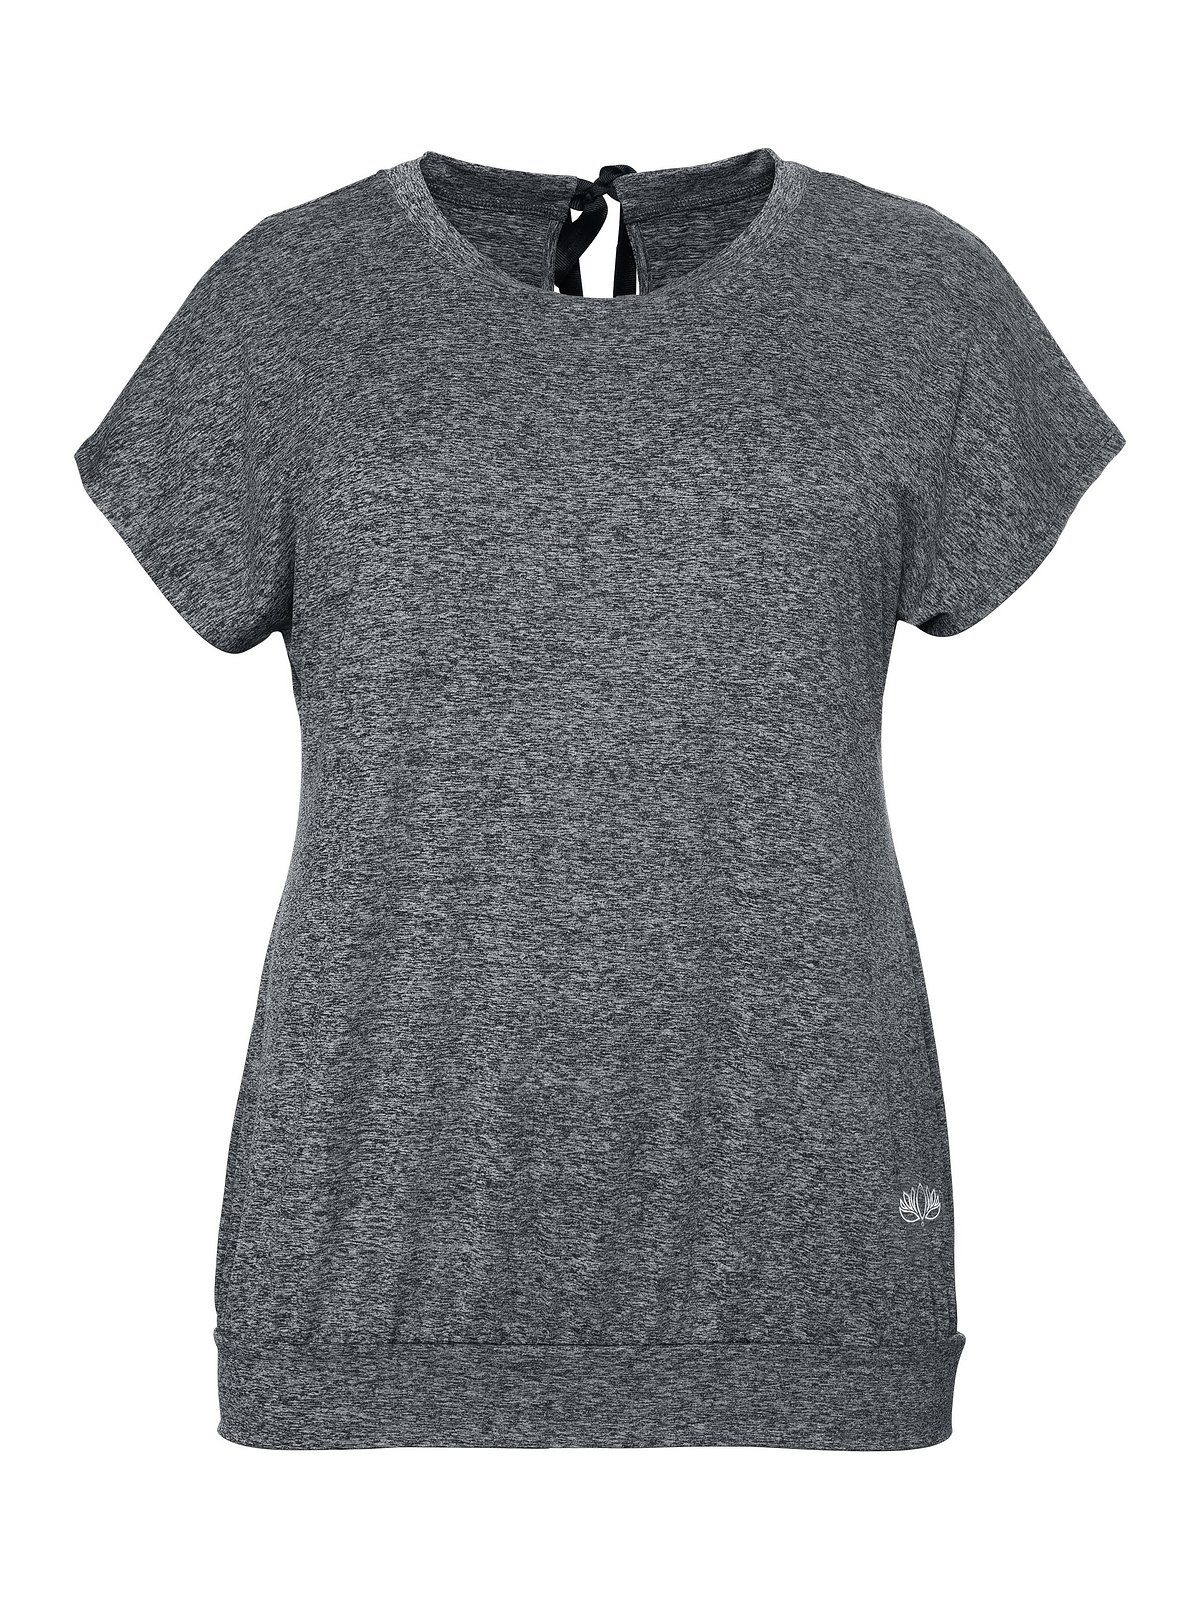 Sheego T-Shirt Große Größen aus grau meliert Funktionsmaterial